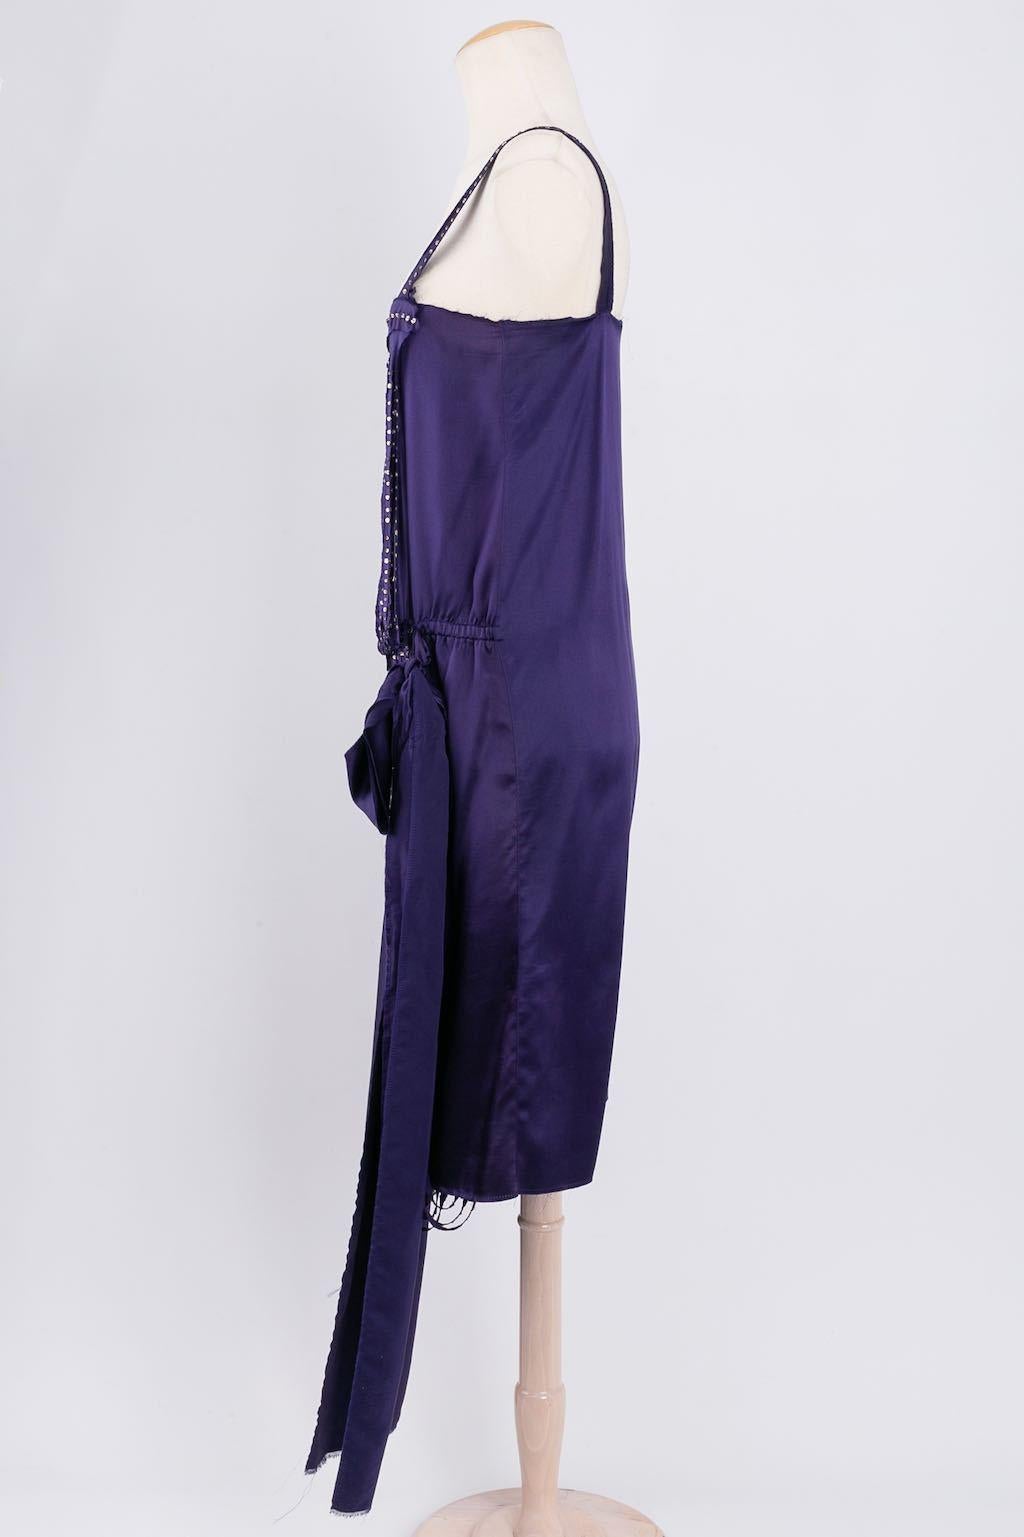 Lanvin - Robe en soie violette rehaussée de strass. Pas de composition ni d'étiquette de taille, il convient à une taille 38FR.
Collectional, 2004


Informations complémentaires : 
Dimensions : 
Buste : 43 cm (16.92